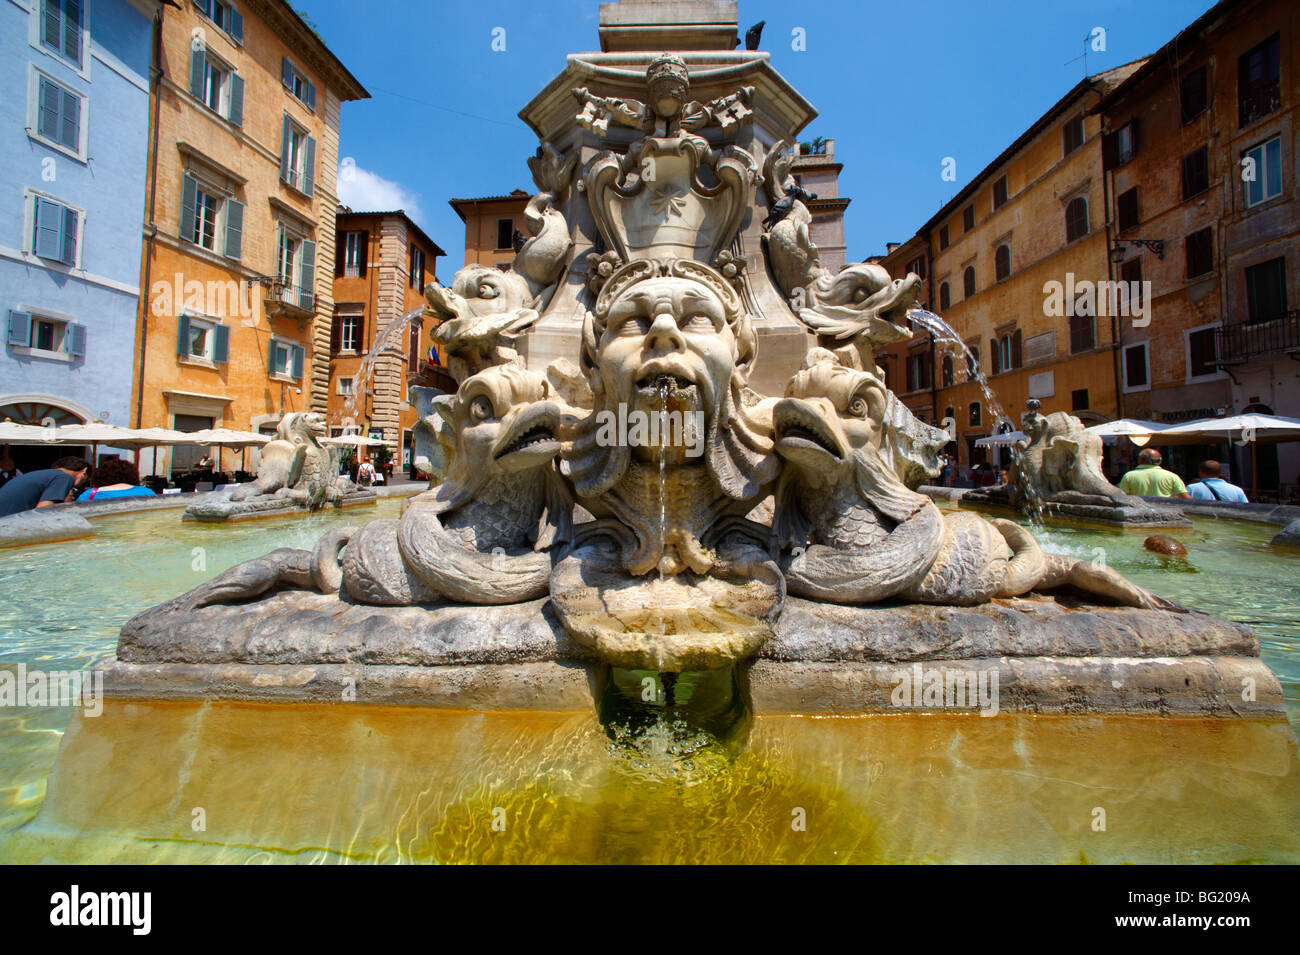 Fontane barocche in prossimità di Piazza Minerva, Roma Foto stock - Alamy